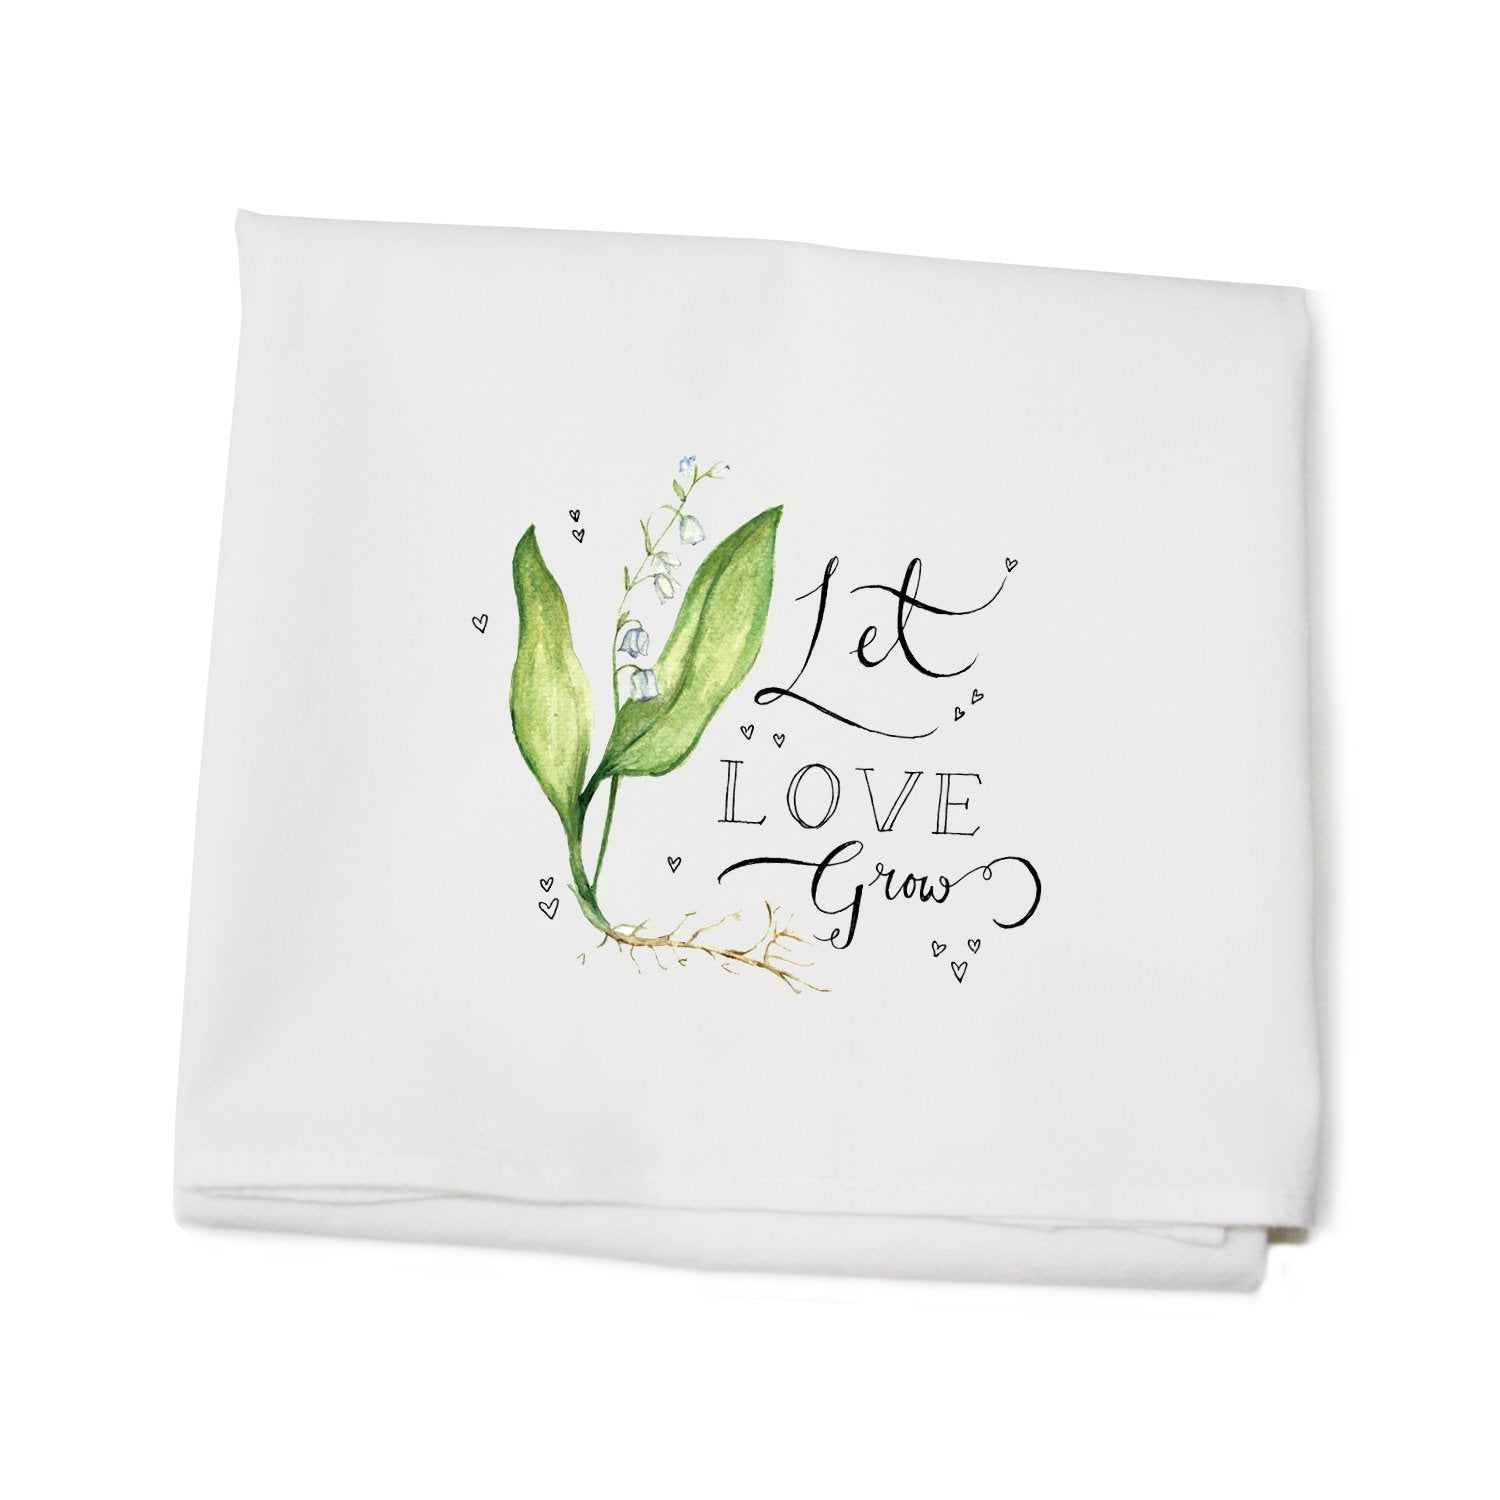 love grows flour sack towel